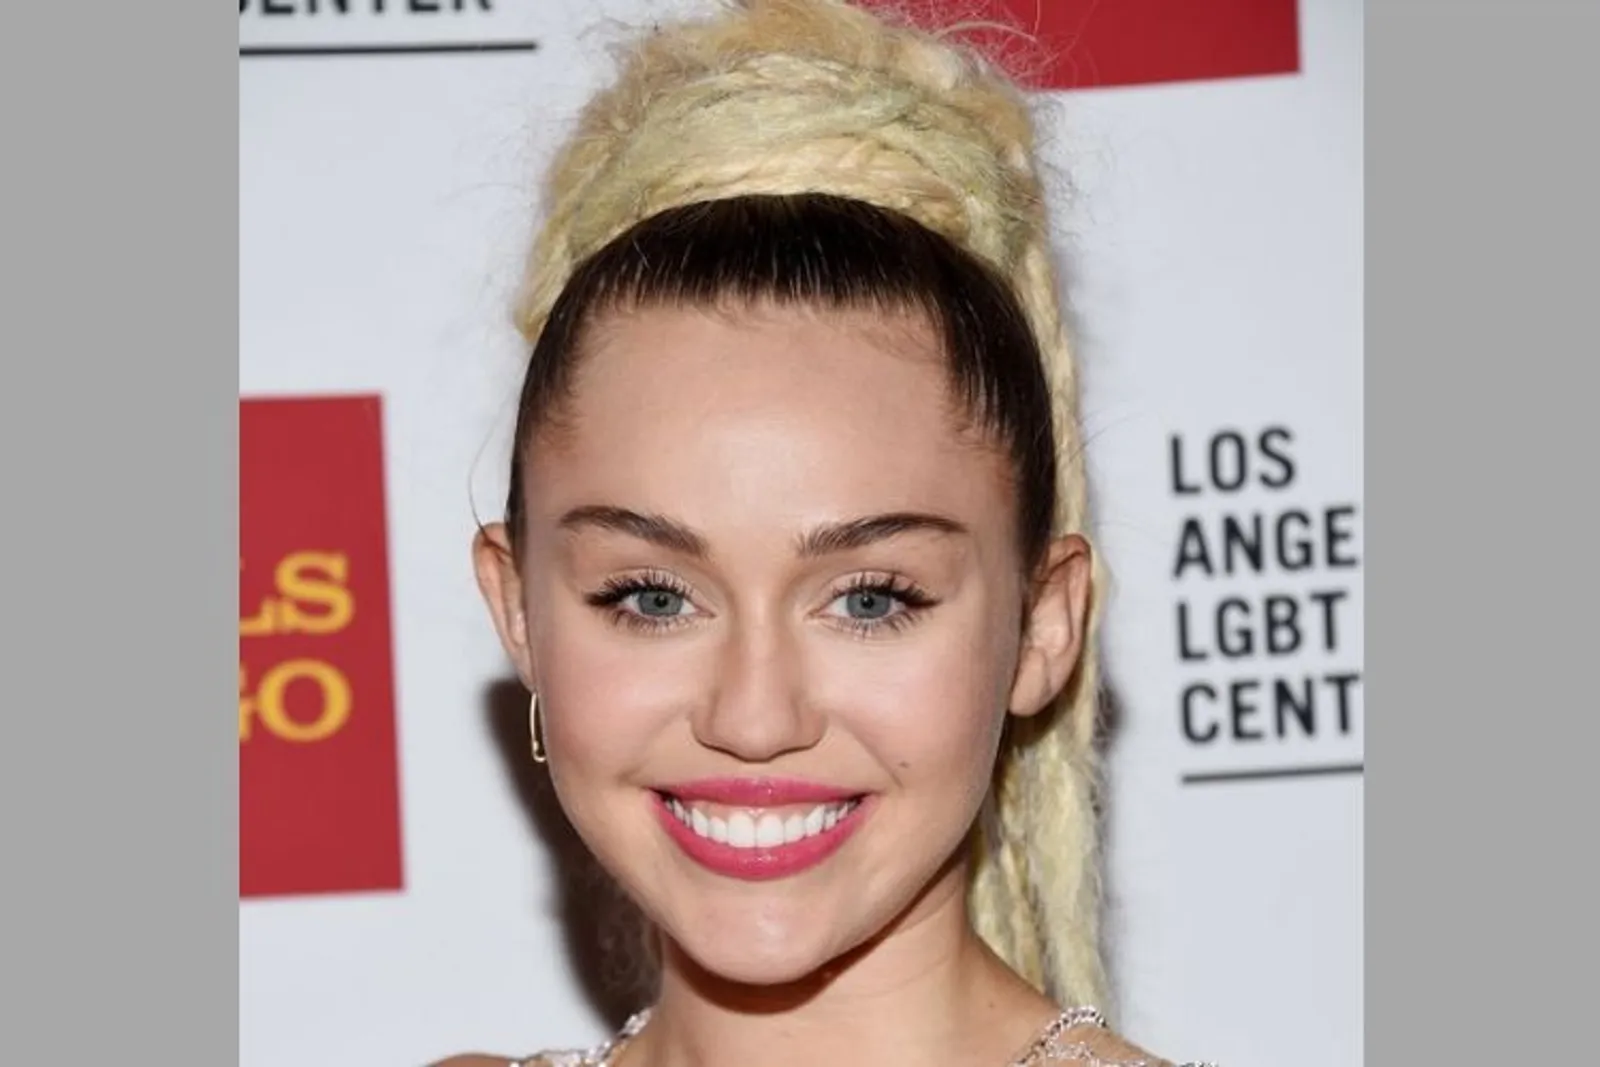 Mulai dari Gadis Polos hingga Jadi Liar, Ini Transformasi Miley Cyrus